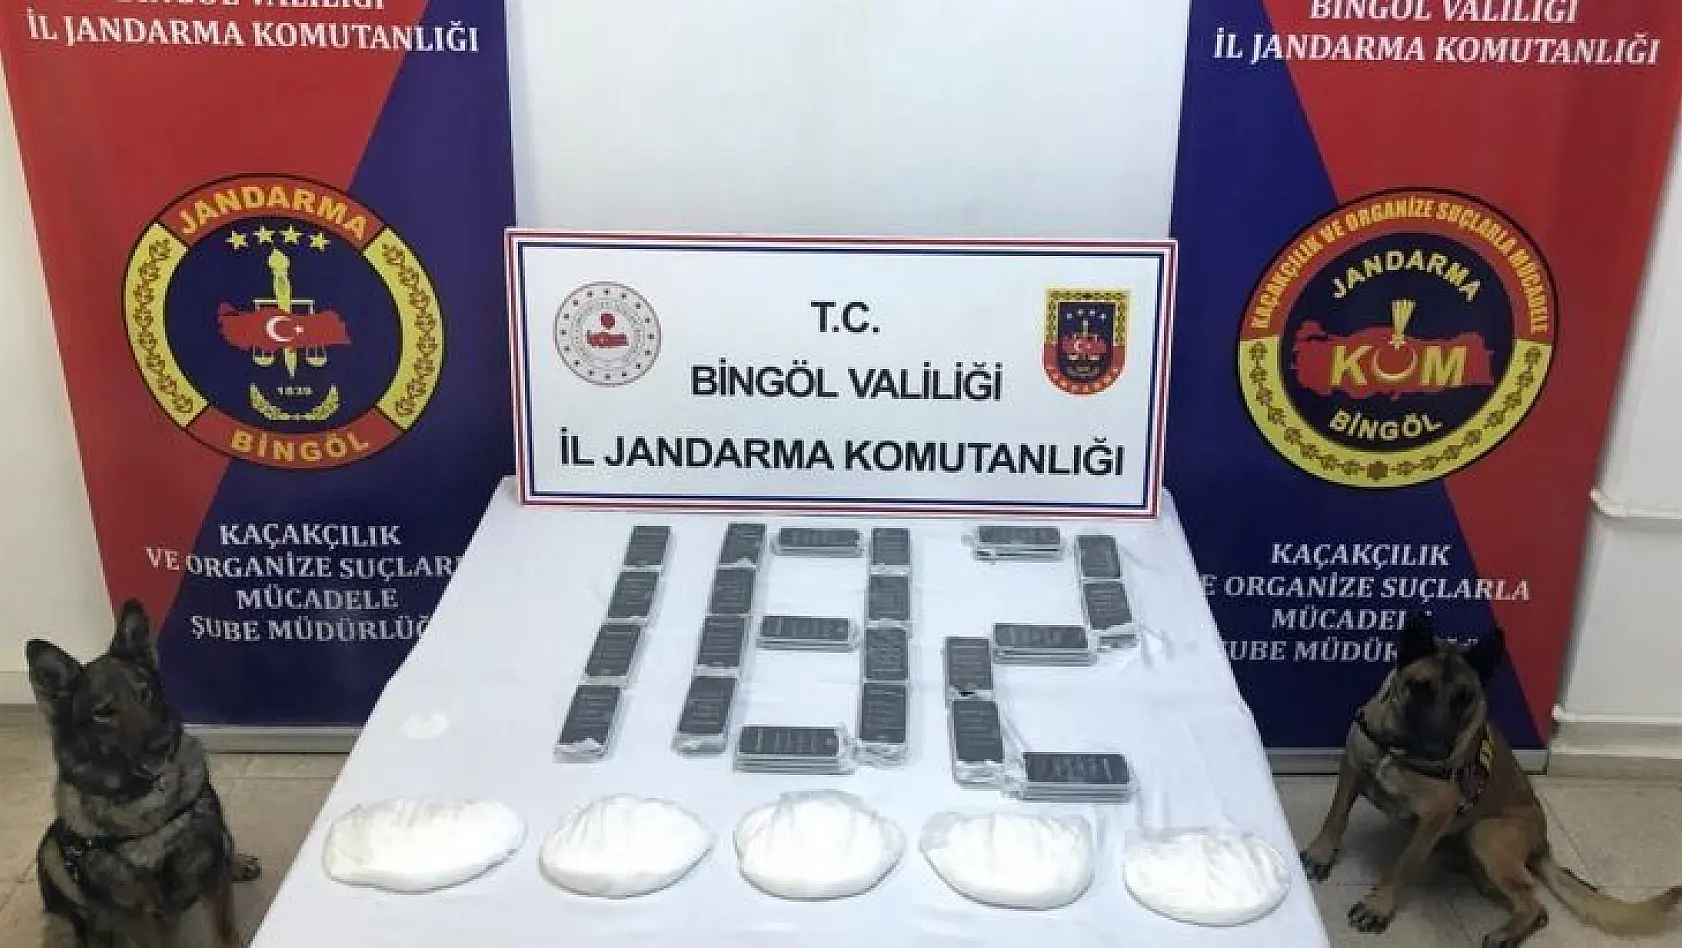 Bingöl'de 2 milyon 200 bin TL değerinde uyuşturucu ele geçirildi